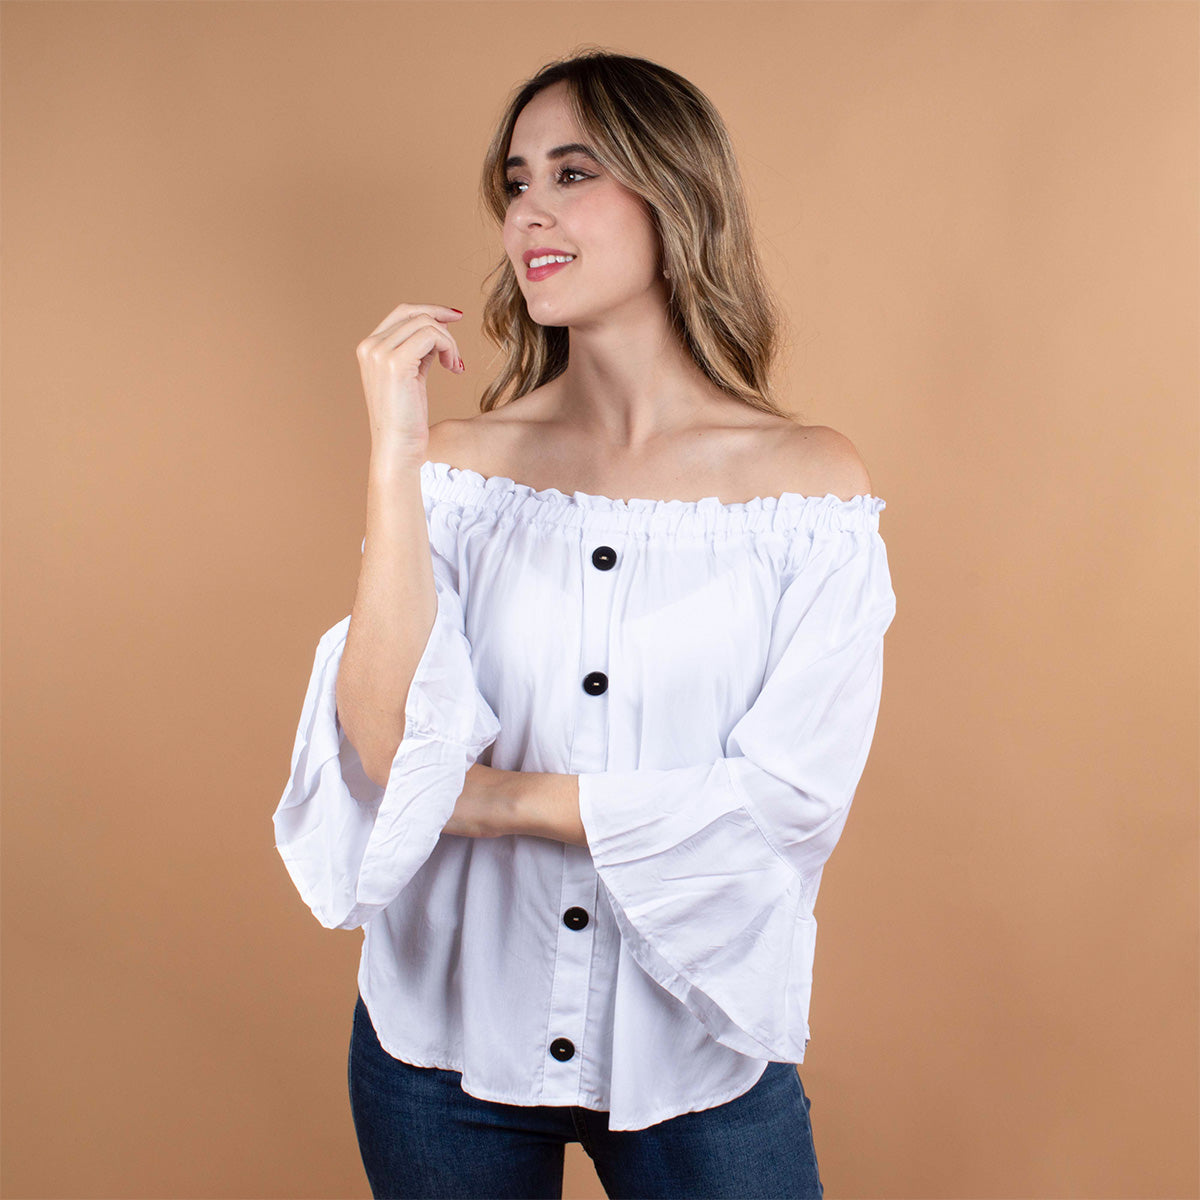 Blusa color blanco con botones y manga larga